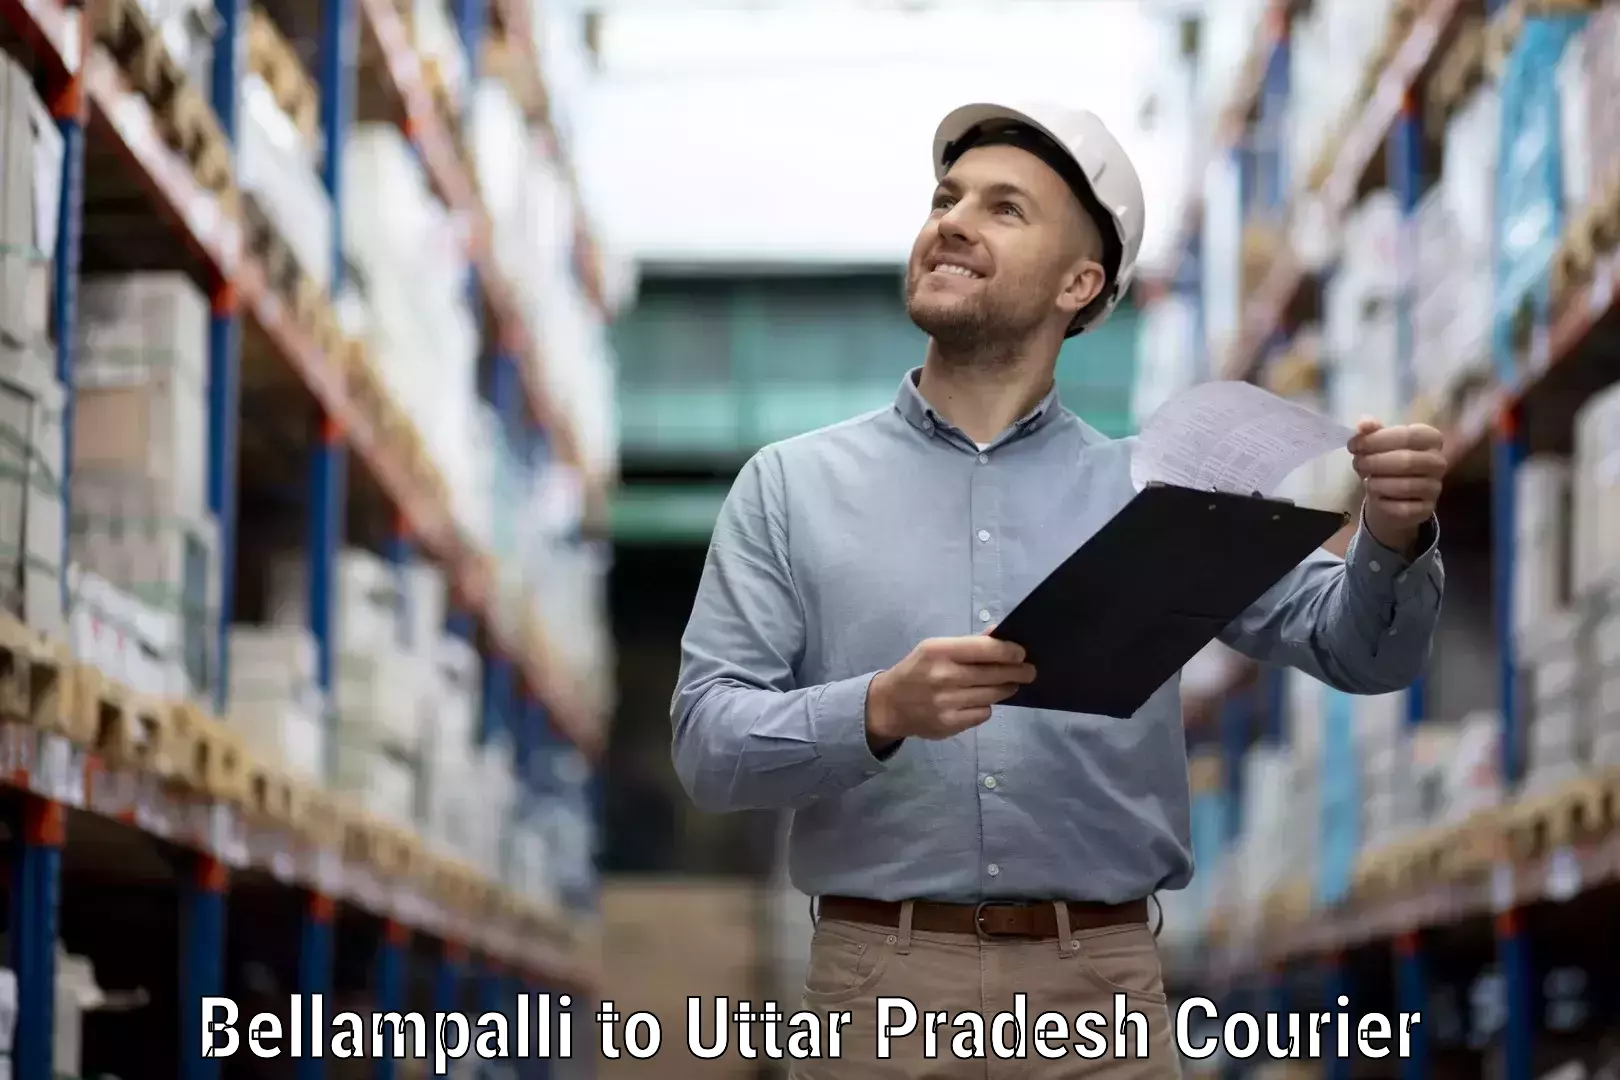 User-friendly courier app Bellampalli to Ambedkar Nagar